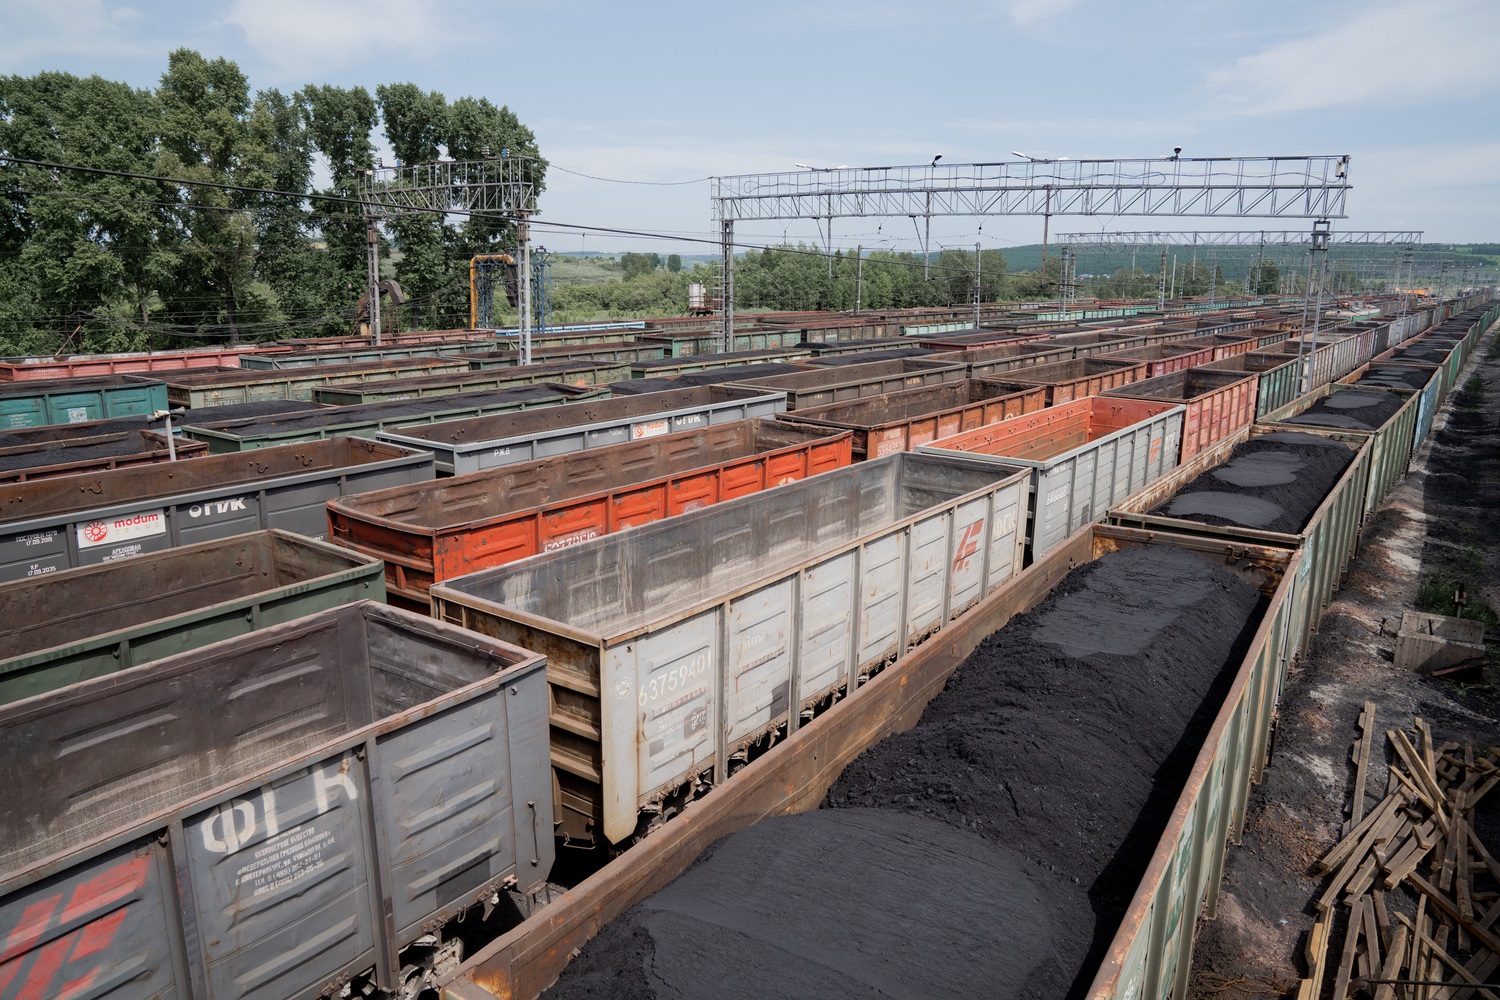 Почти 10 млн тонн угля отгружено потребителям с начала 2022 года компанией АО Стройсервис. Разрез Пермяковский